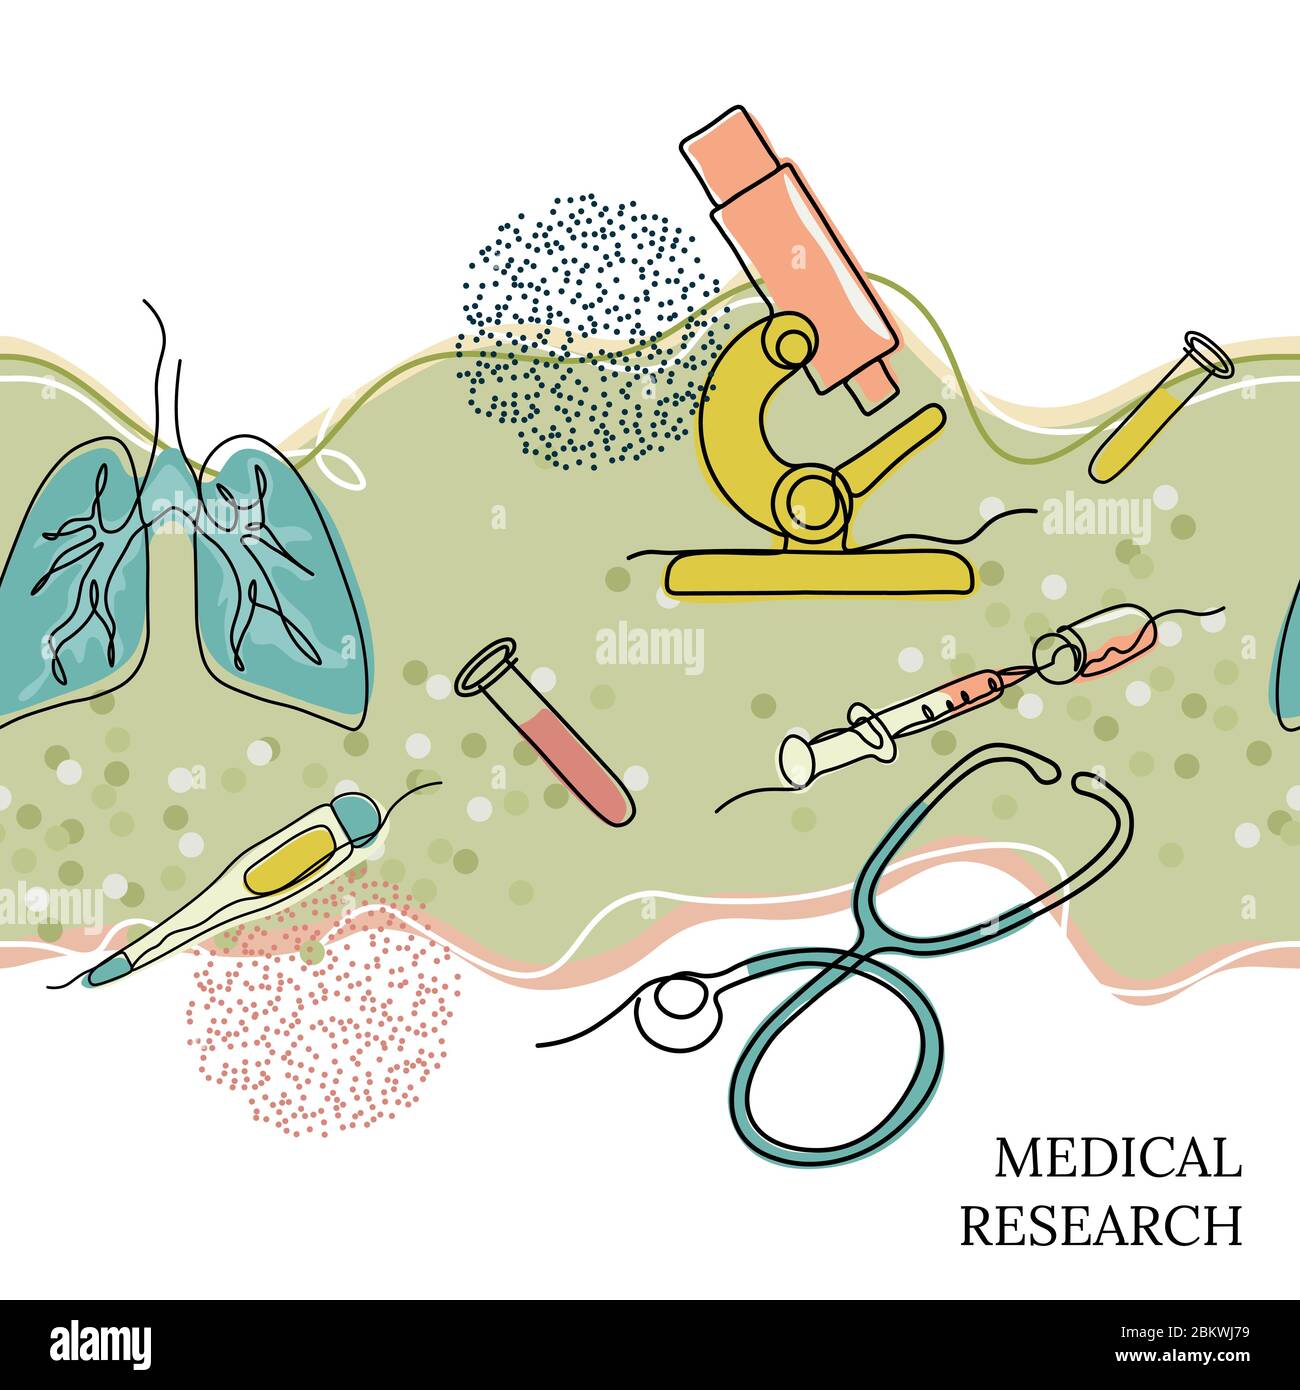 Nahtlose Illustration. Inschrift-medizinische Forschung. Mikroskop, Lunge, Spritze, Cowind-19 Virus, in einer Linie gezeichnet. Stock Vektor